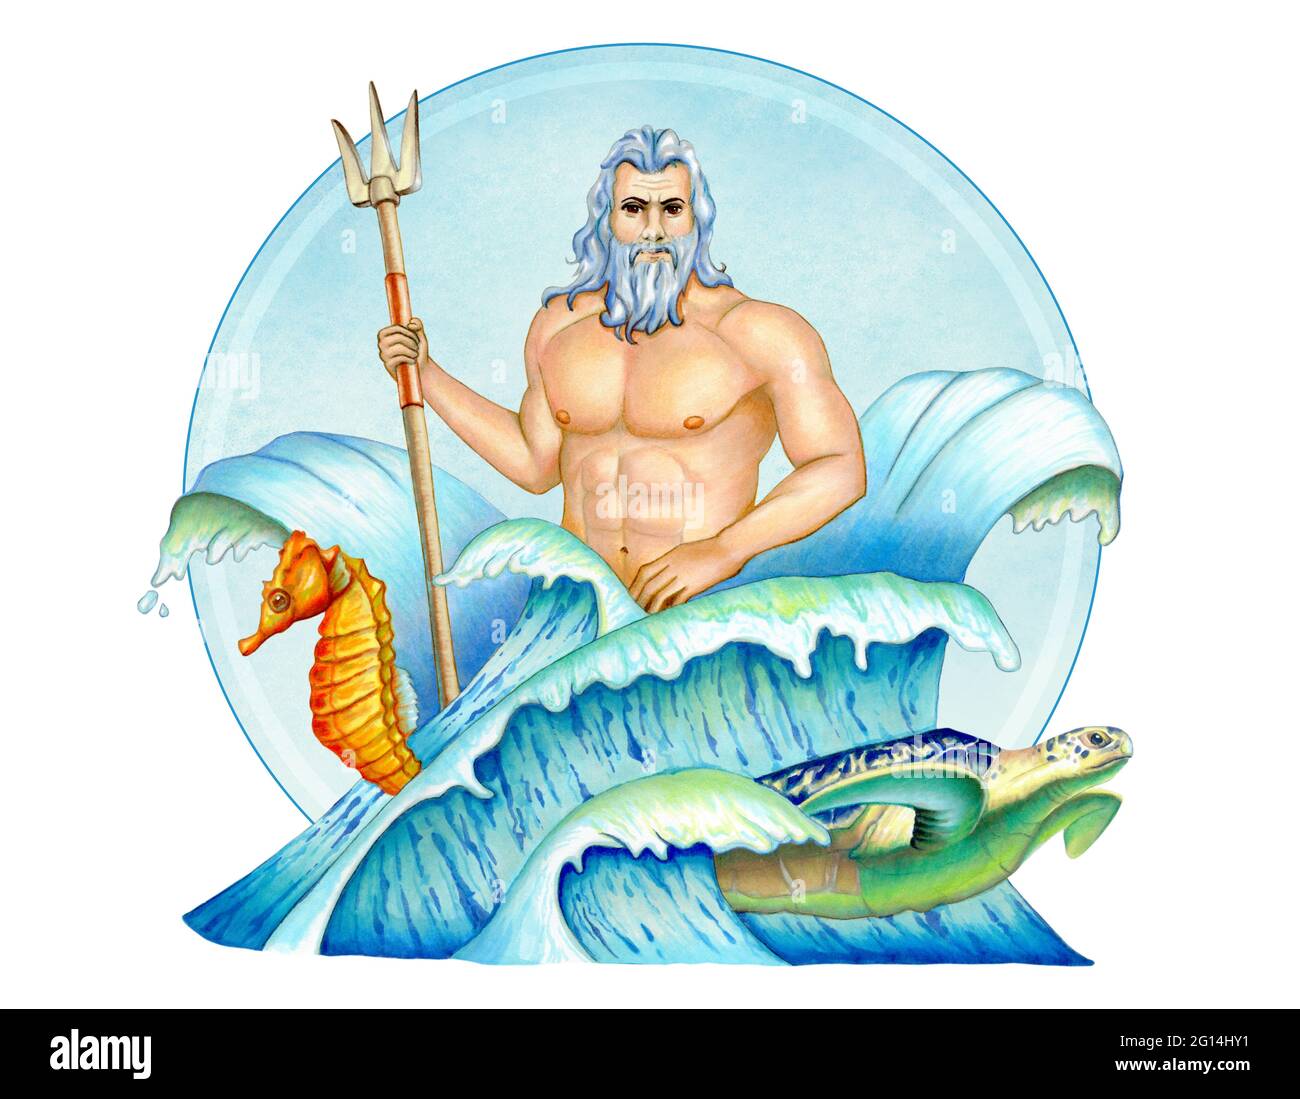 Poseidon, griechischer gott des Meeres, in einer Komposition mit Wellen, einem Seepferd und einer Meeresschildkröte. Darstellung gemischter Medien. Stockfoto